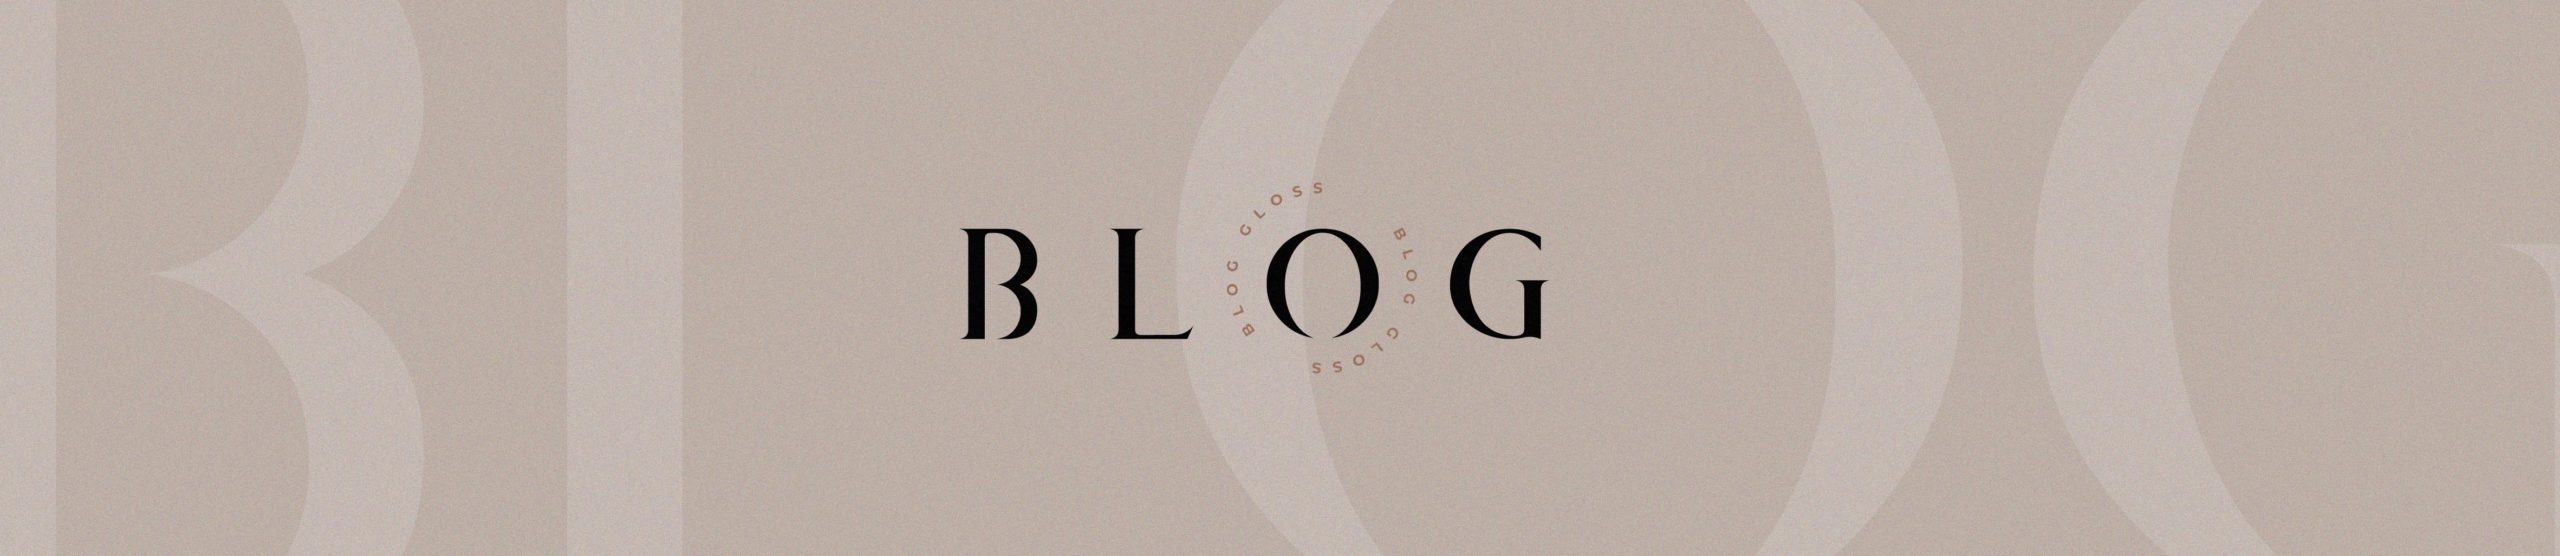 Blog da Gloss